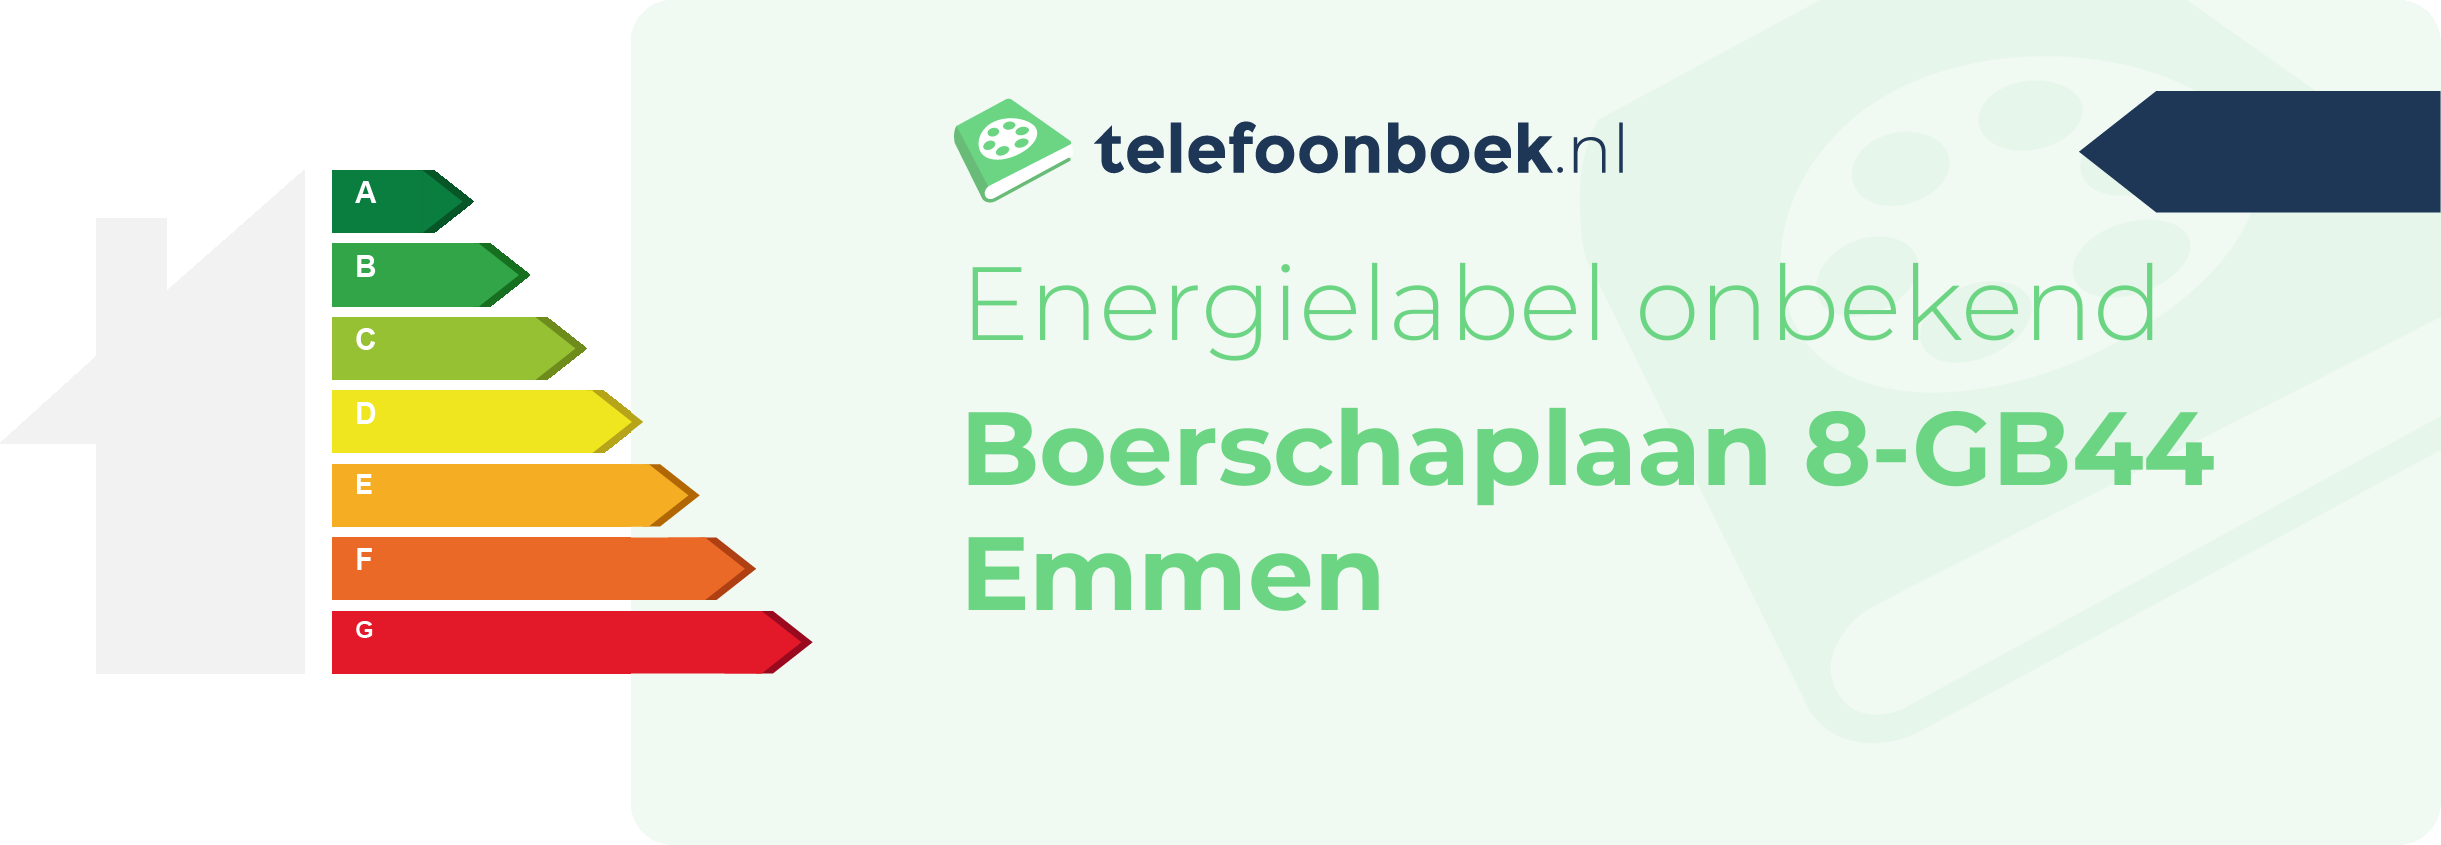 Energielabel Boerschaplaan 8-GB44 Emmen